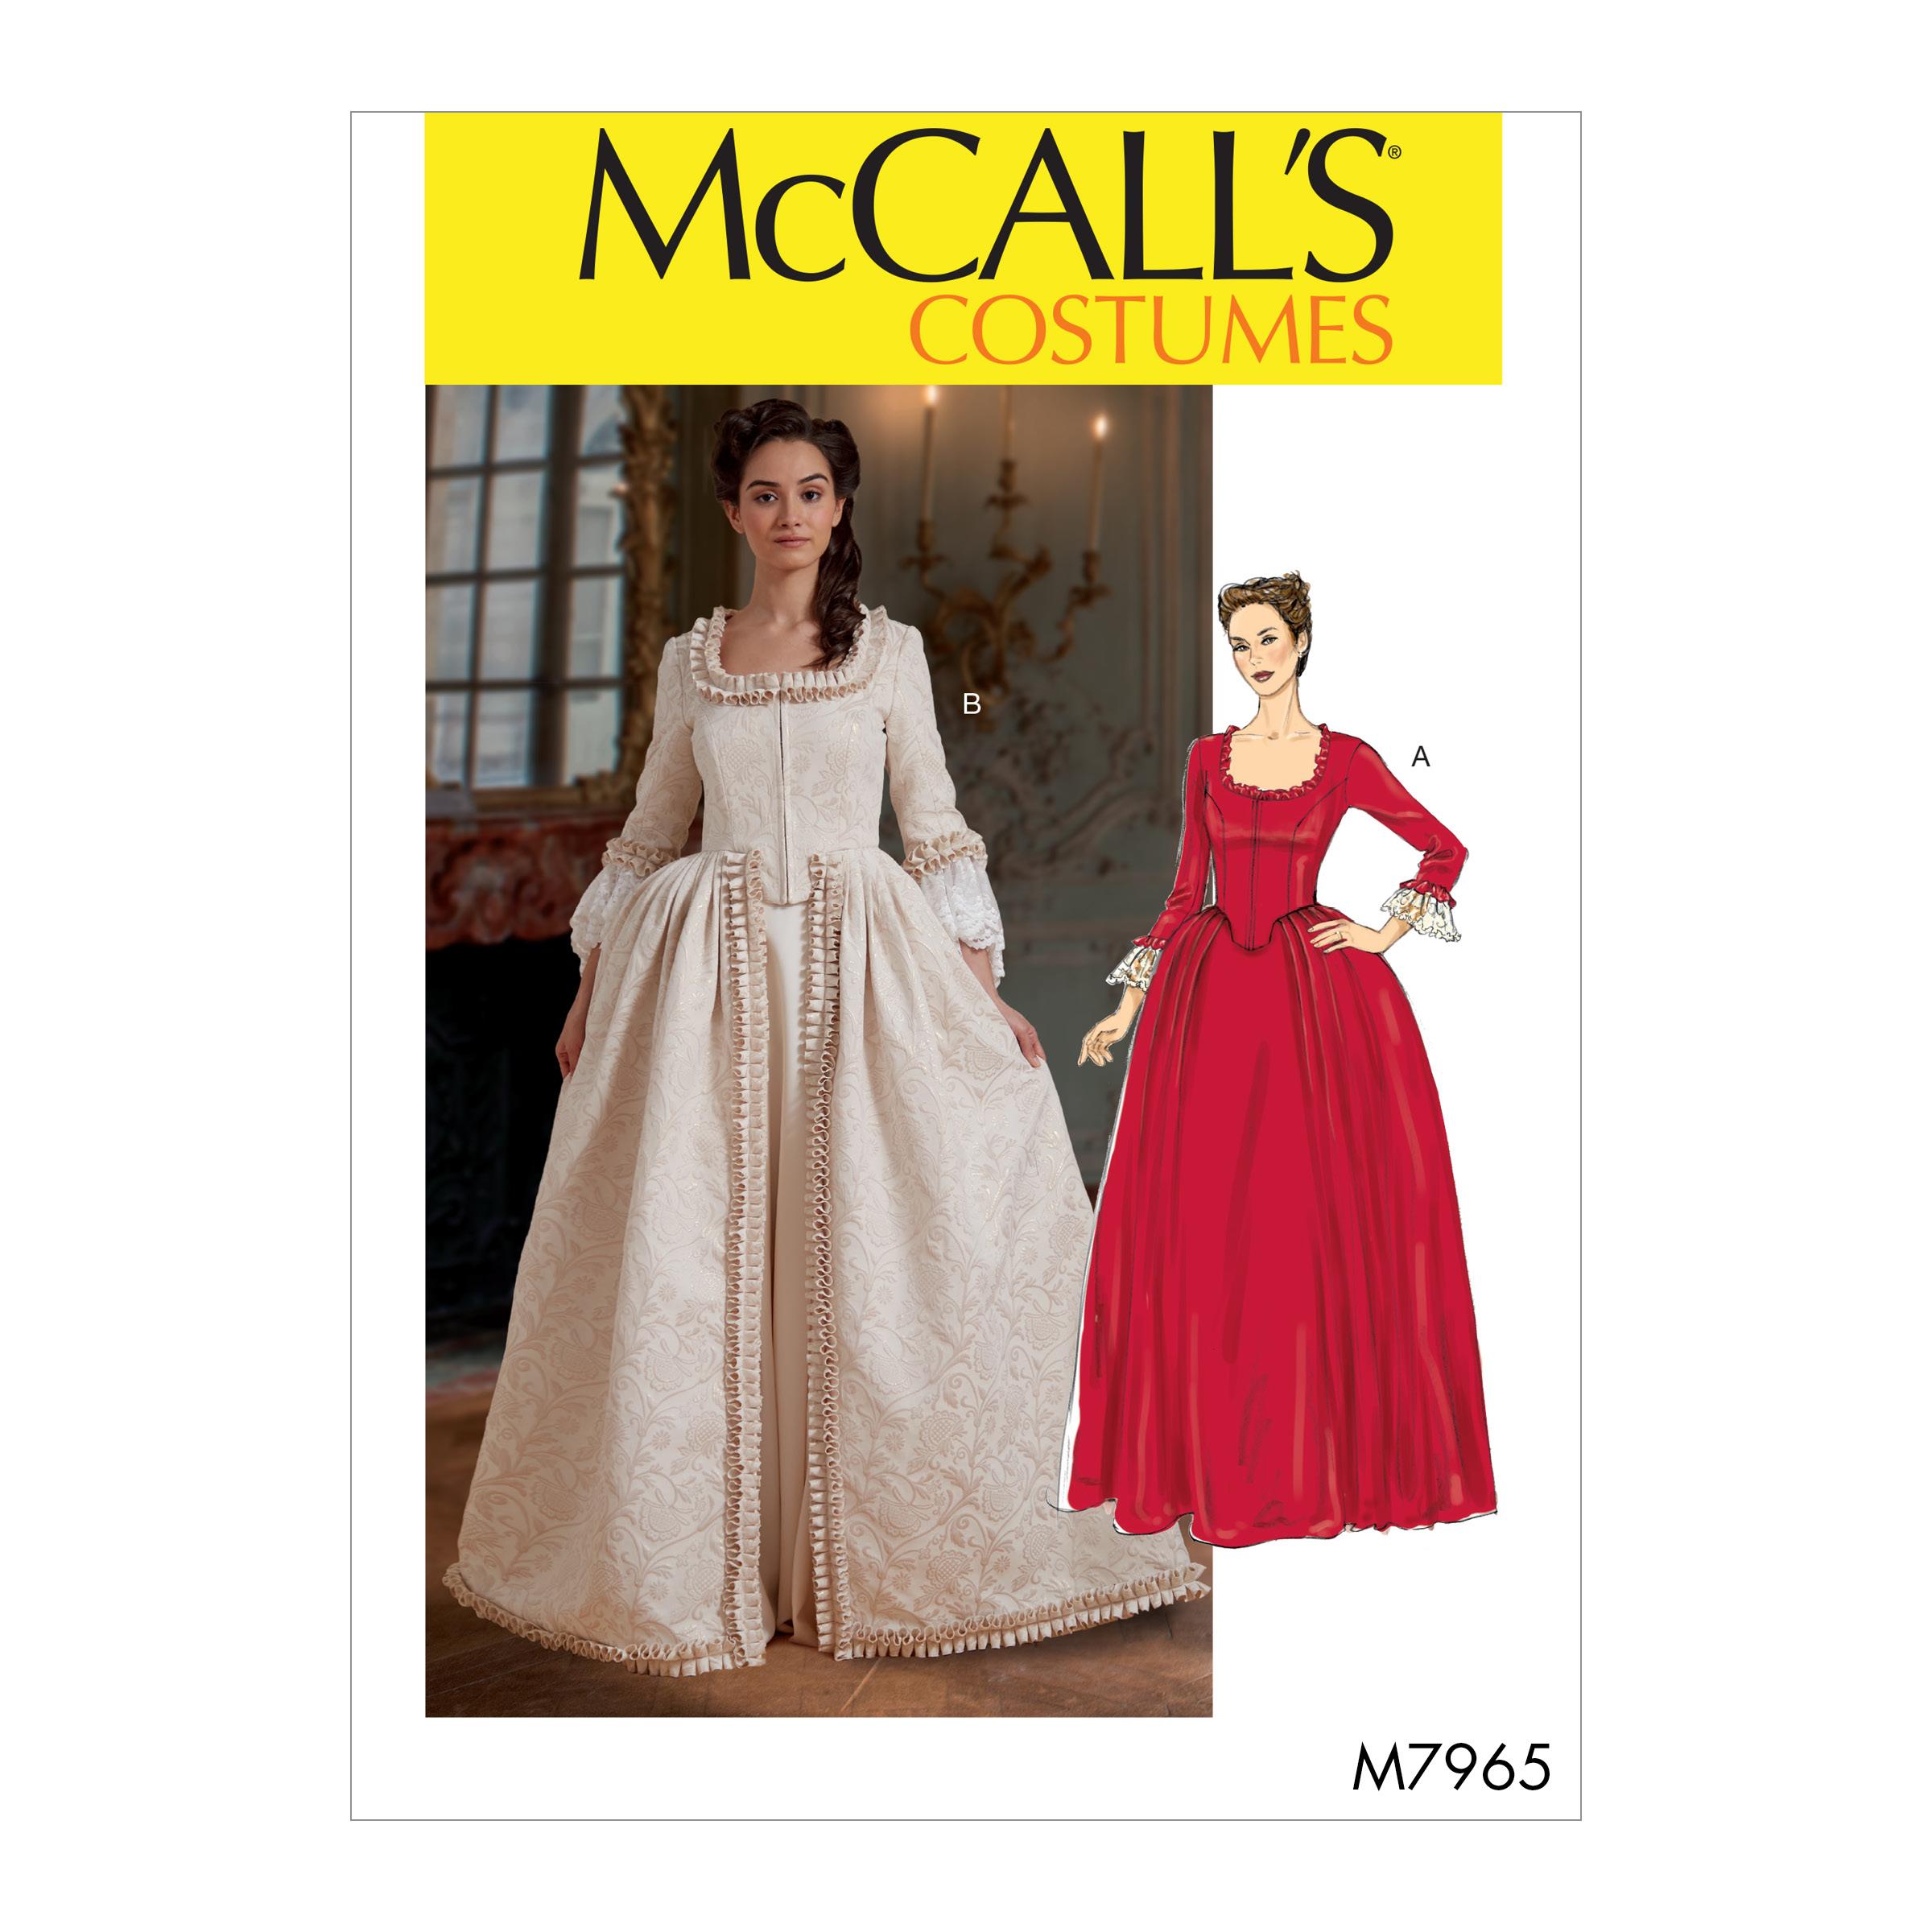 McCalls M7965 Costumes